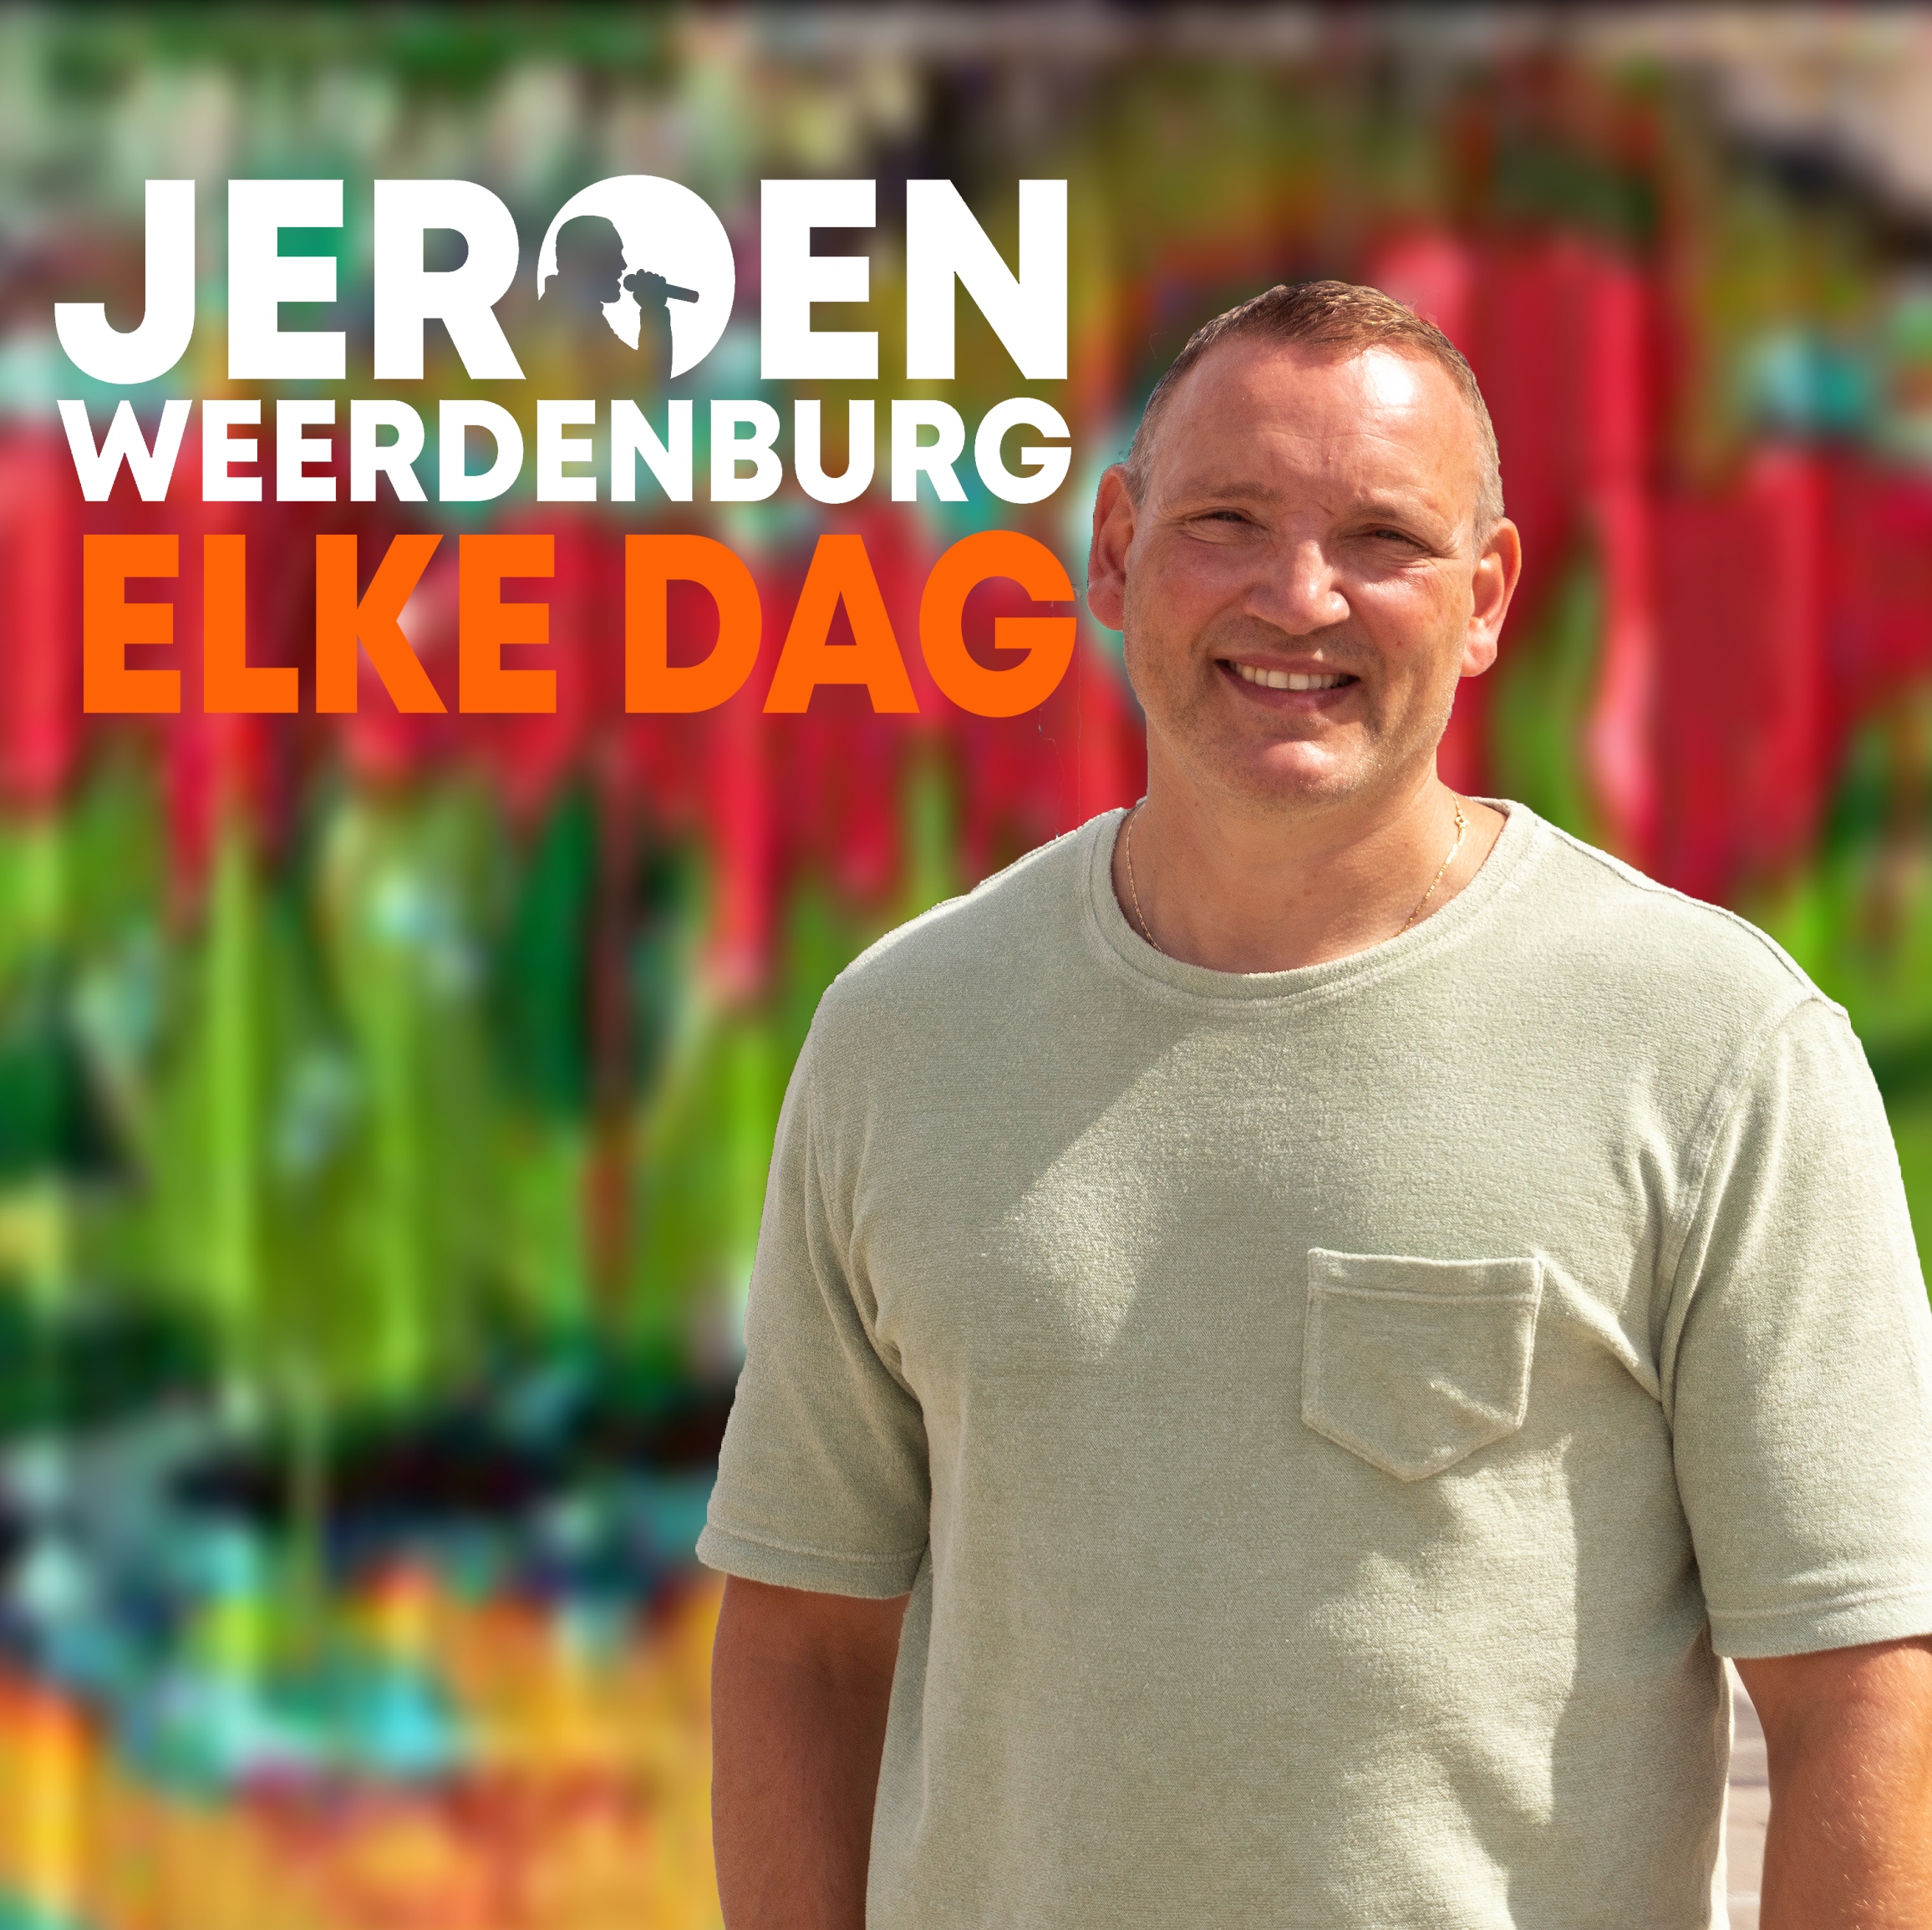 Jeroen Weerdenburg